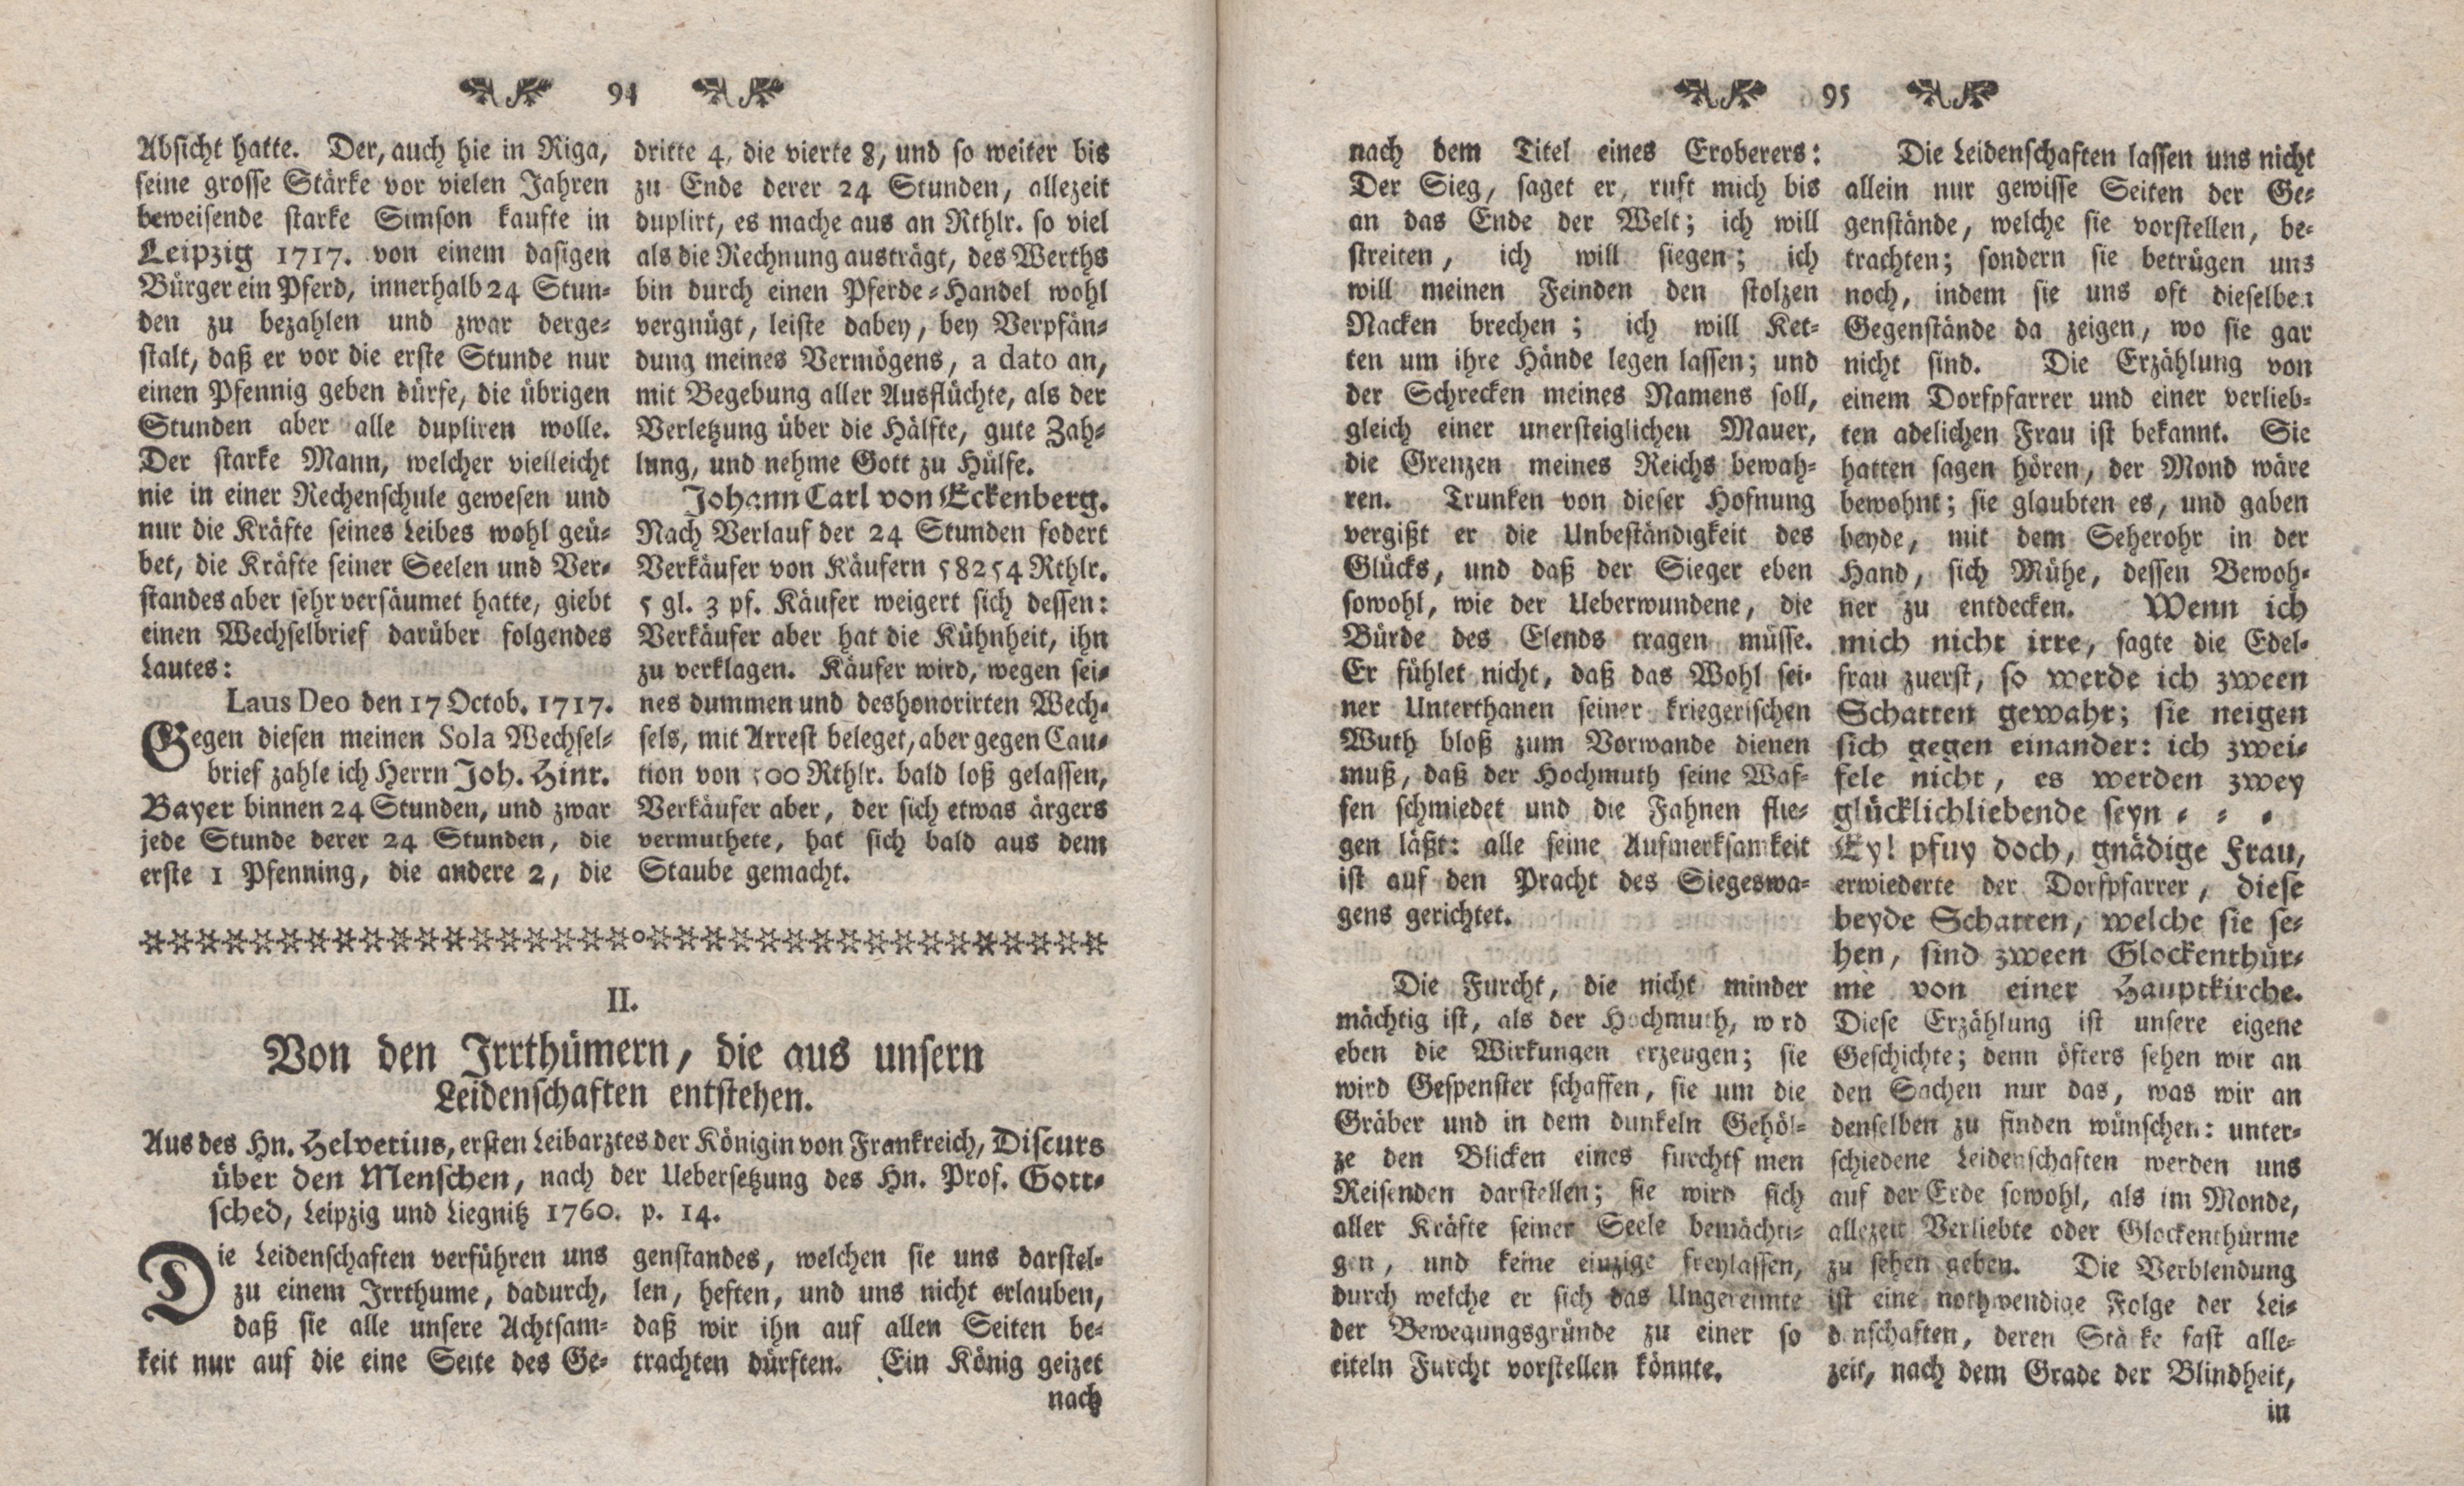 Gelehrte Beyträge zu den Rigischen Anzeigen 1761 (1761) | 47. (94-95) Main body of text